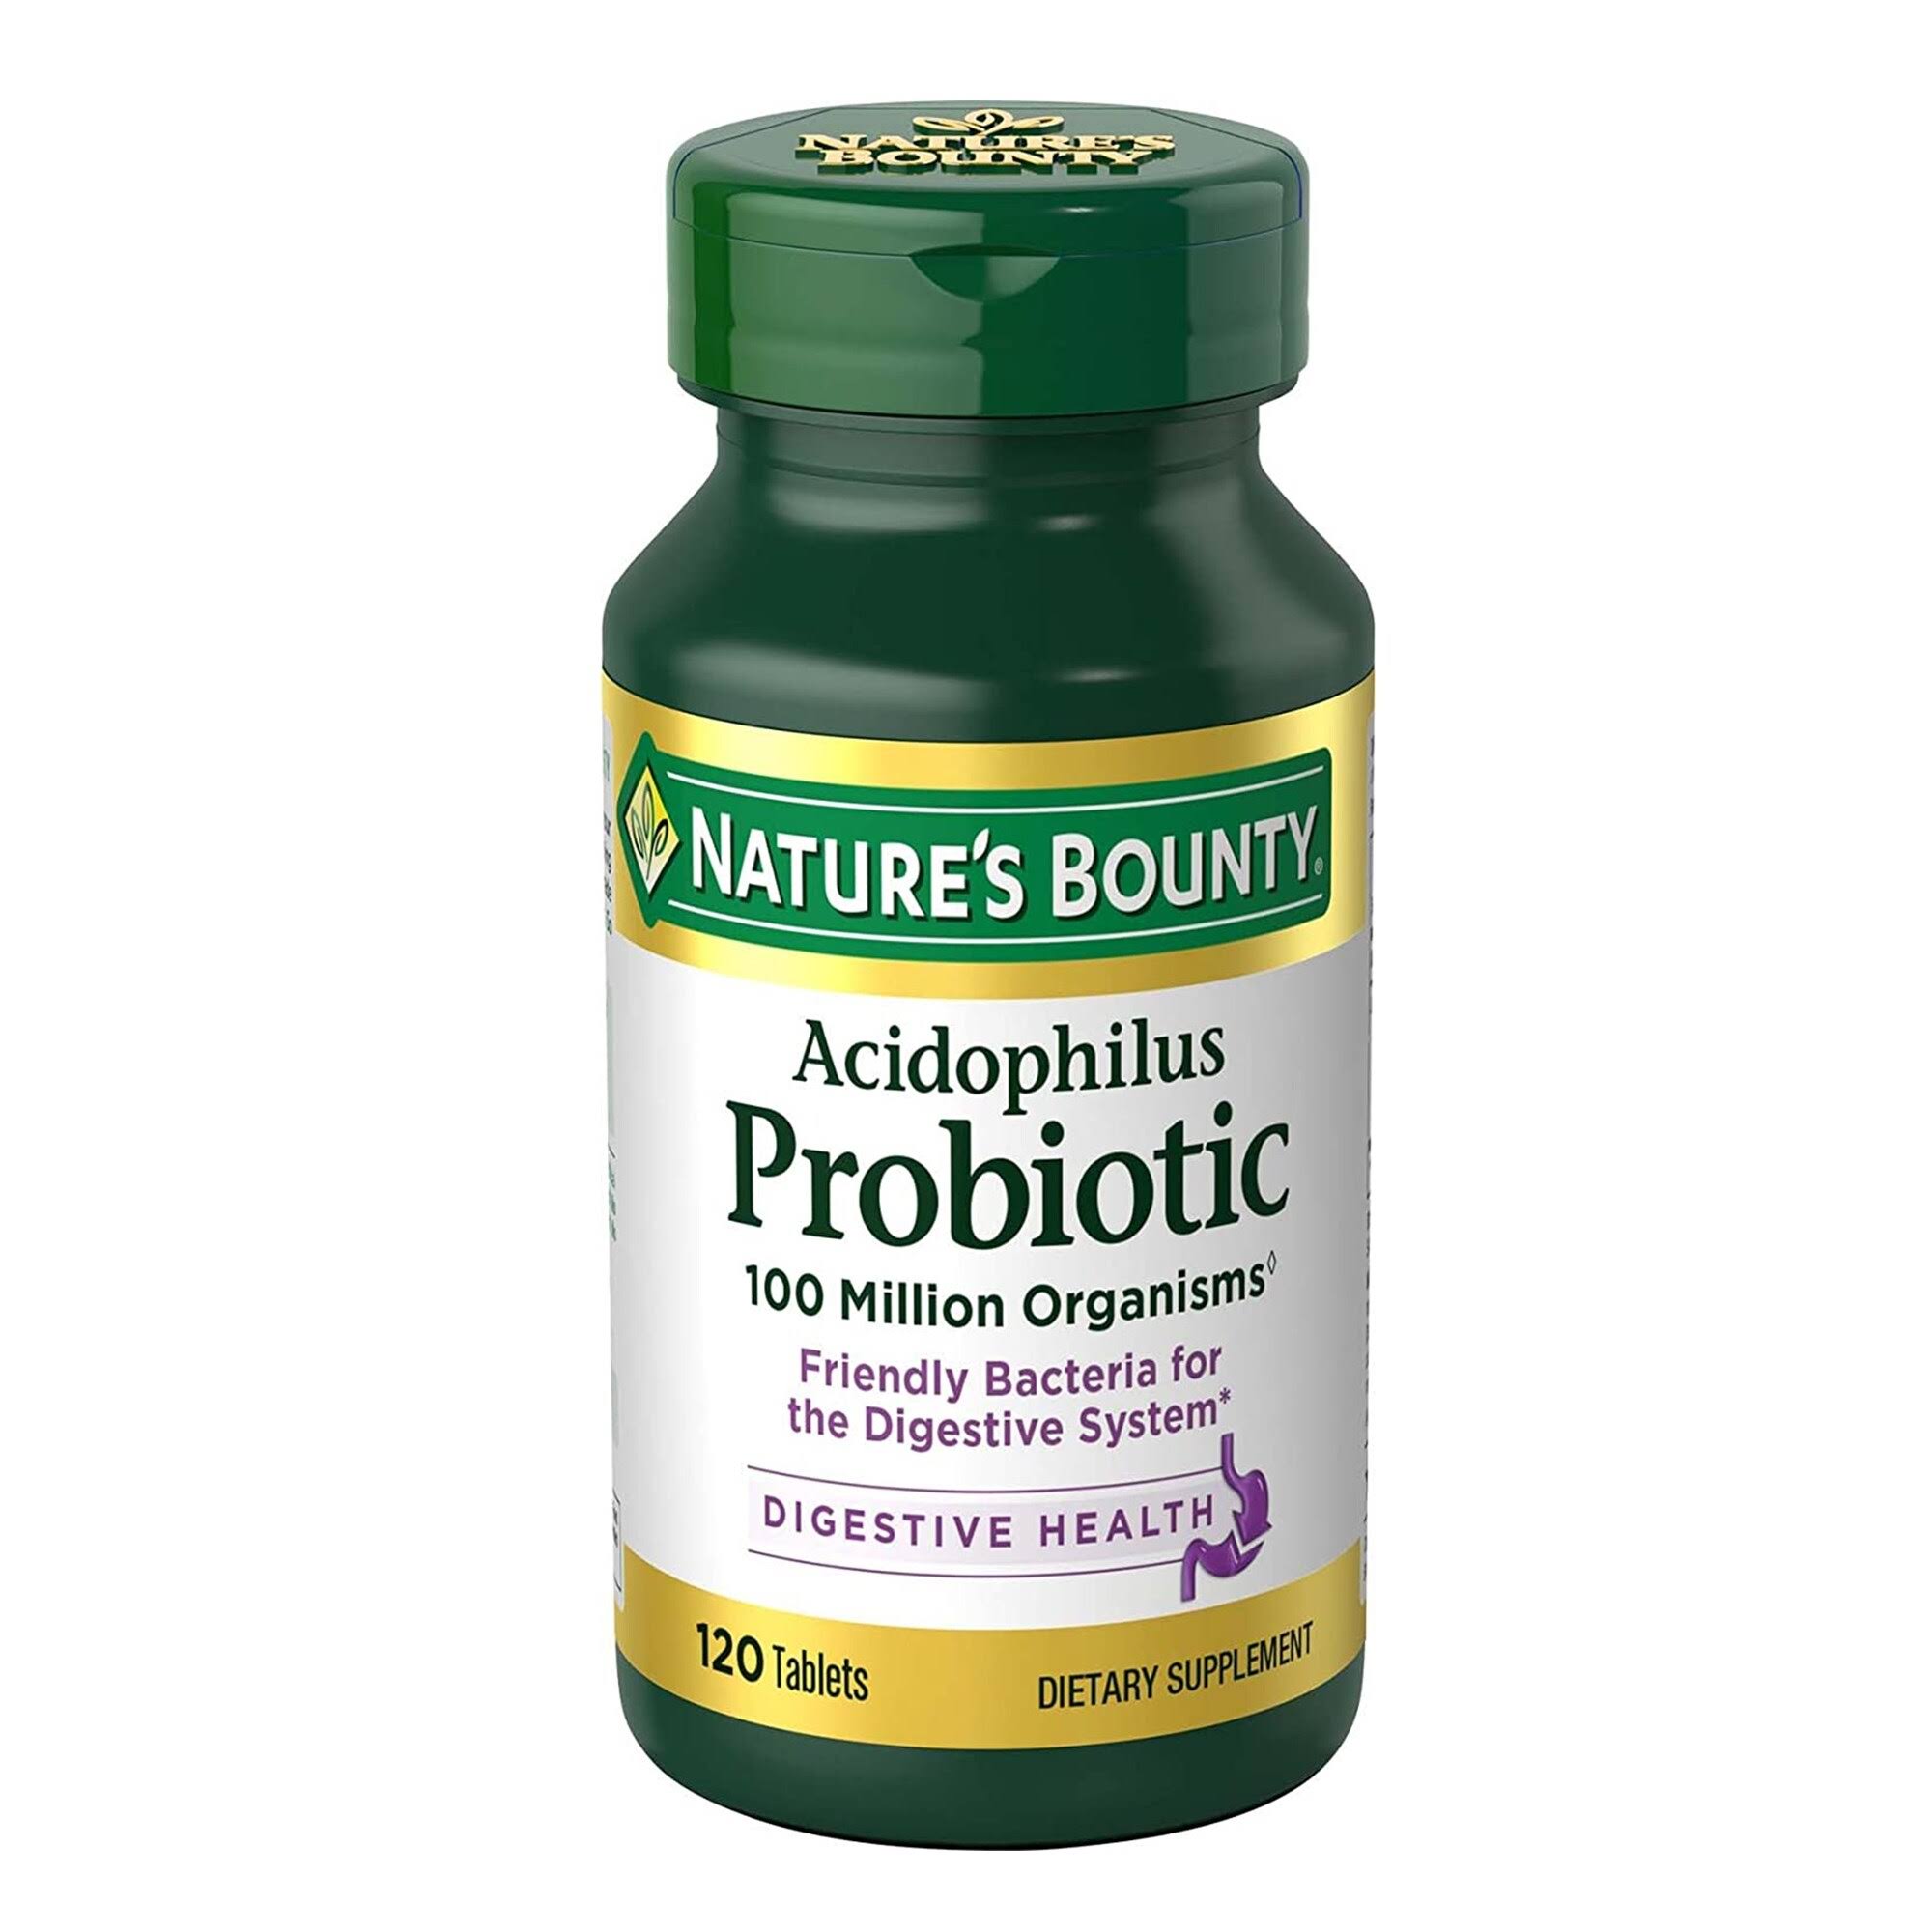 Natures Bounty Probiotic Acidophilus - 100 Capsules